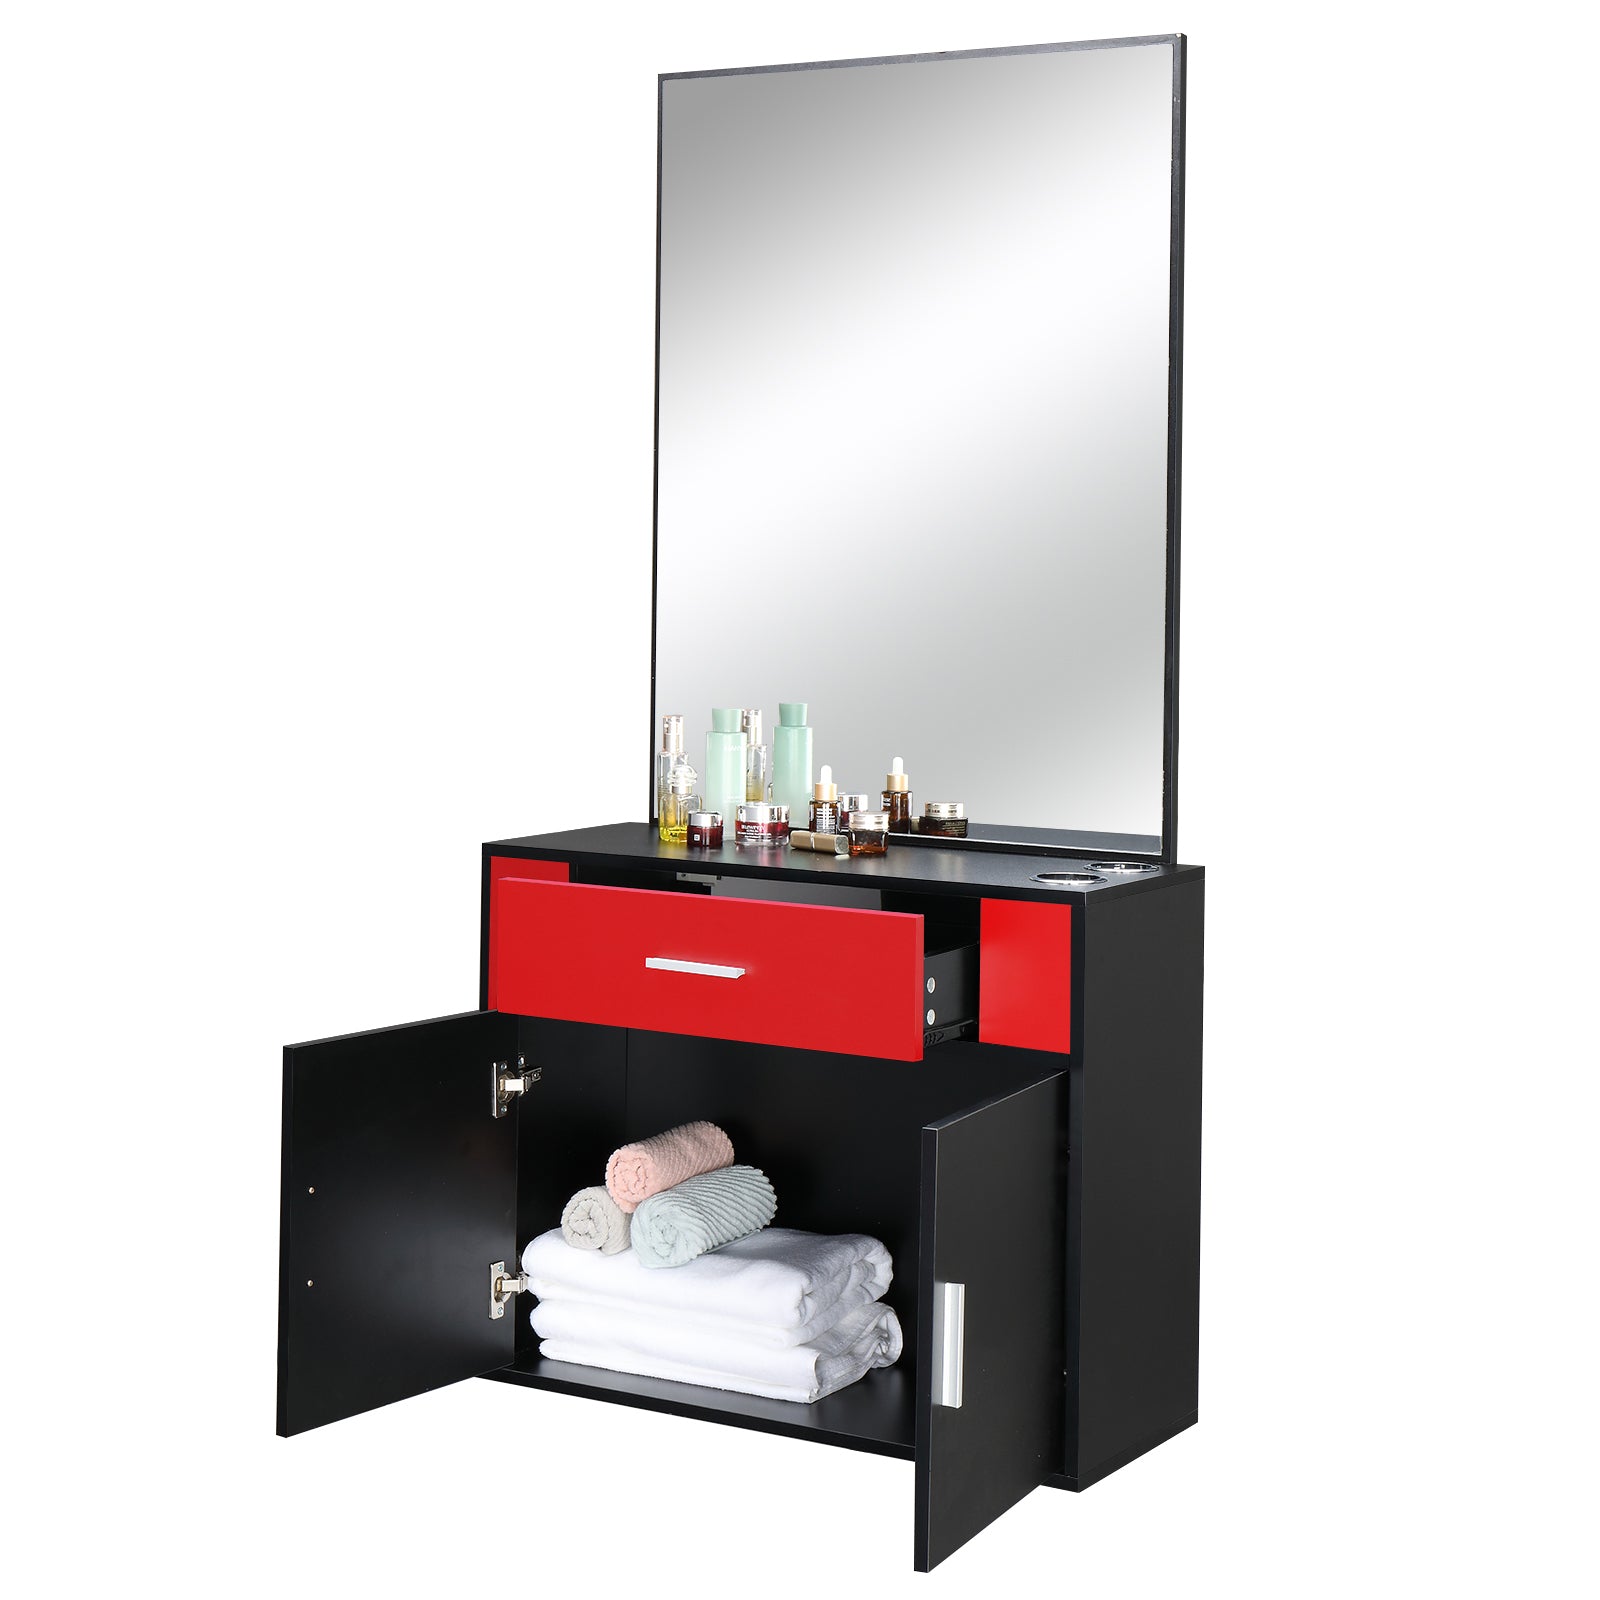 Chipboard linen top 1 drawer 1 door with mirror Salon cabinet